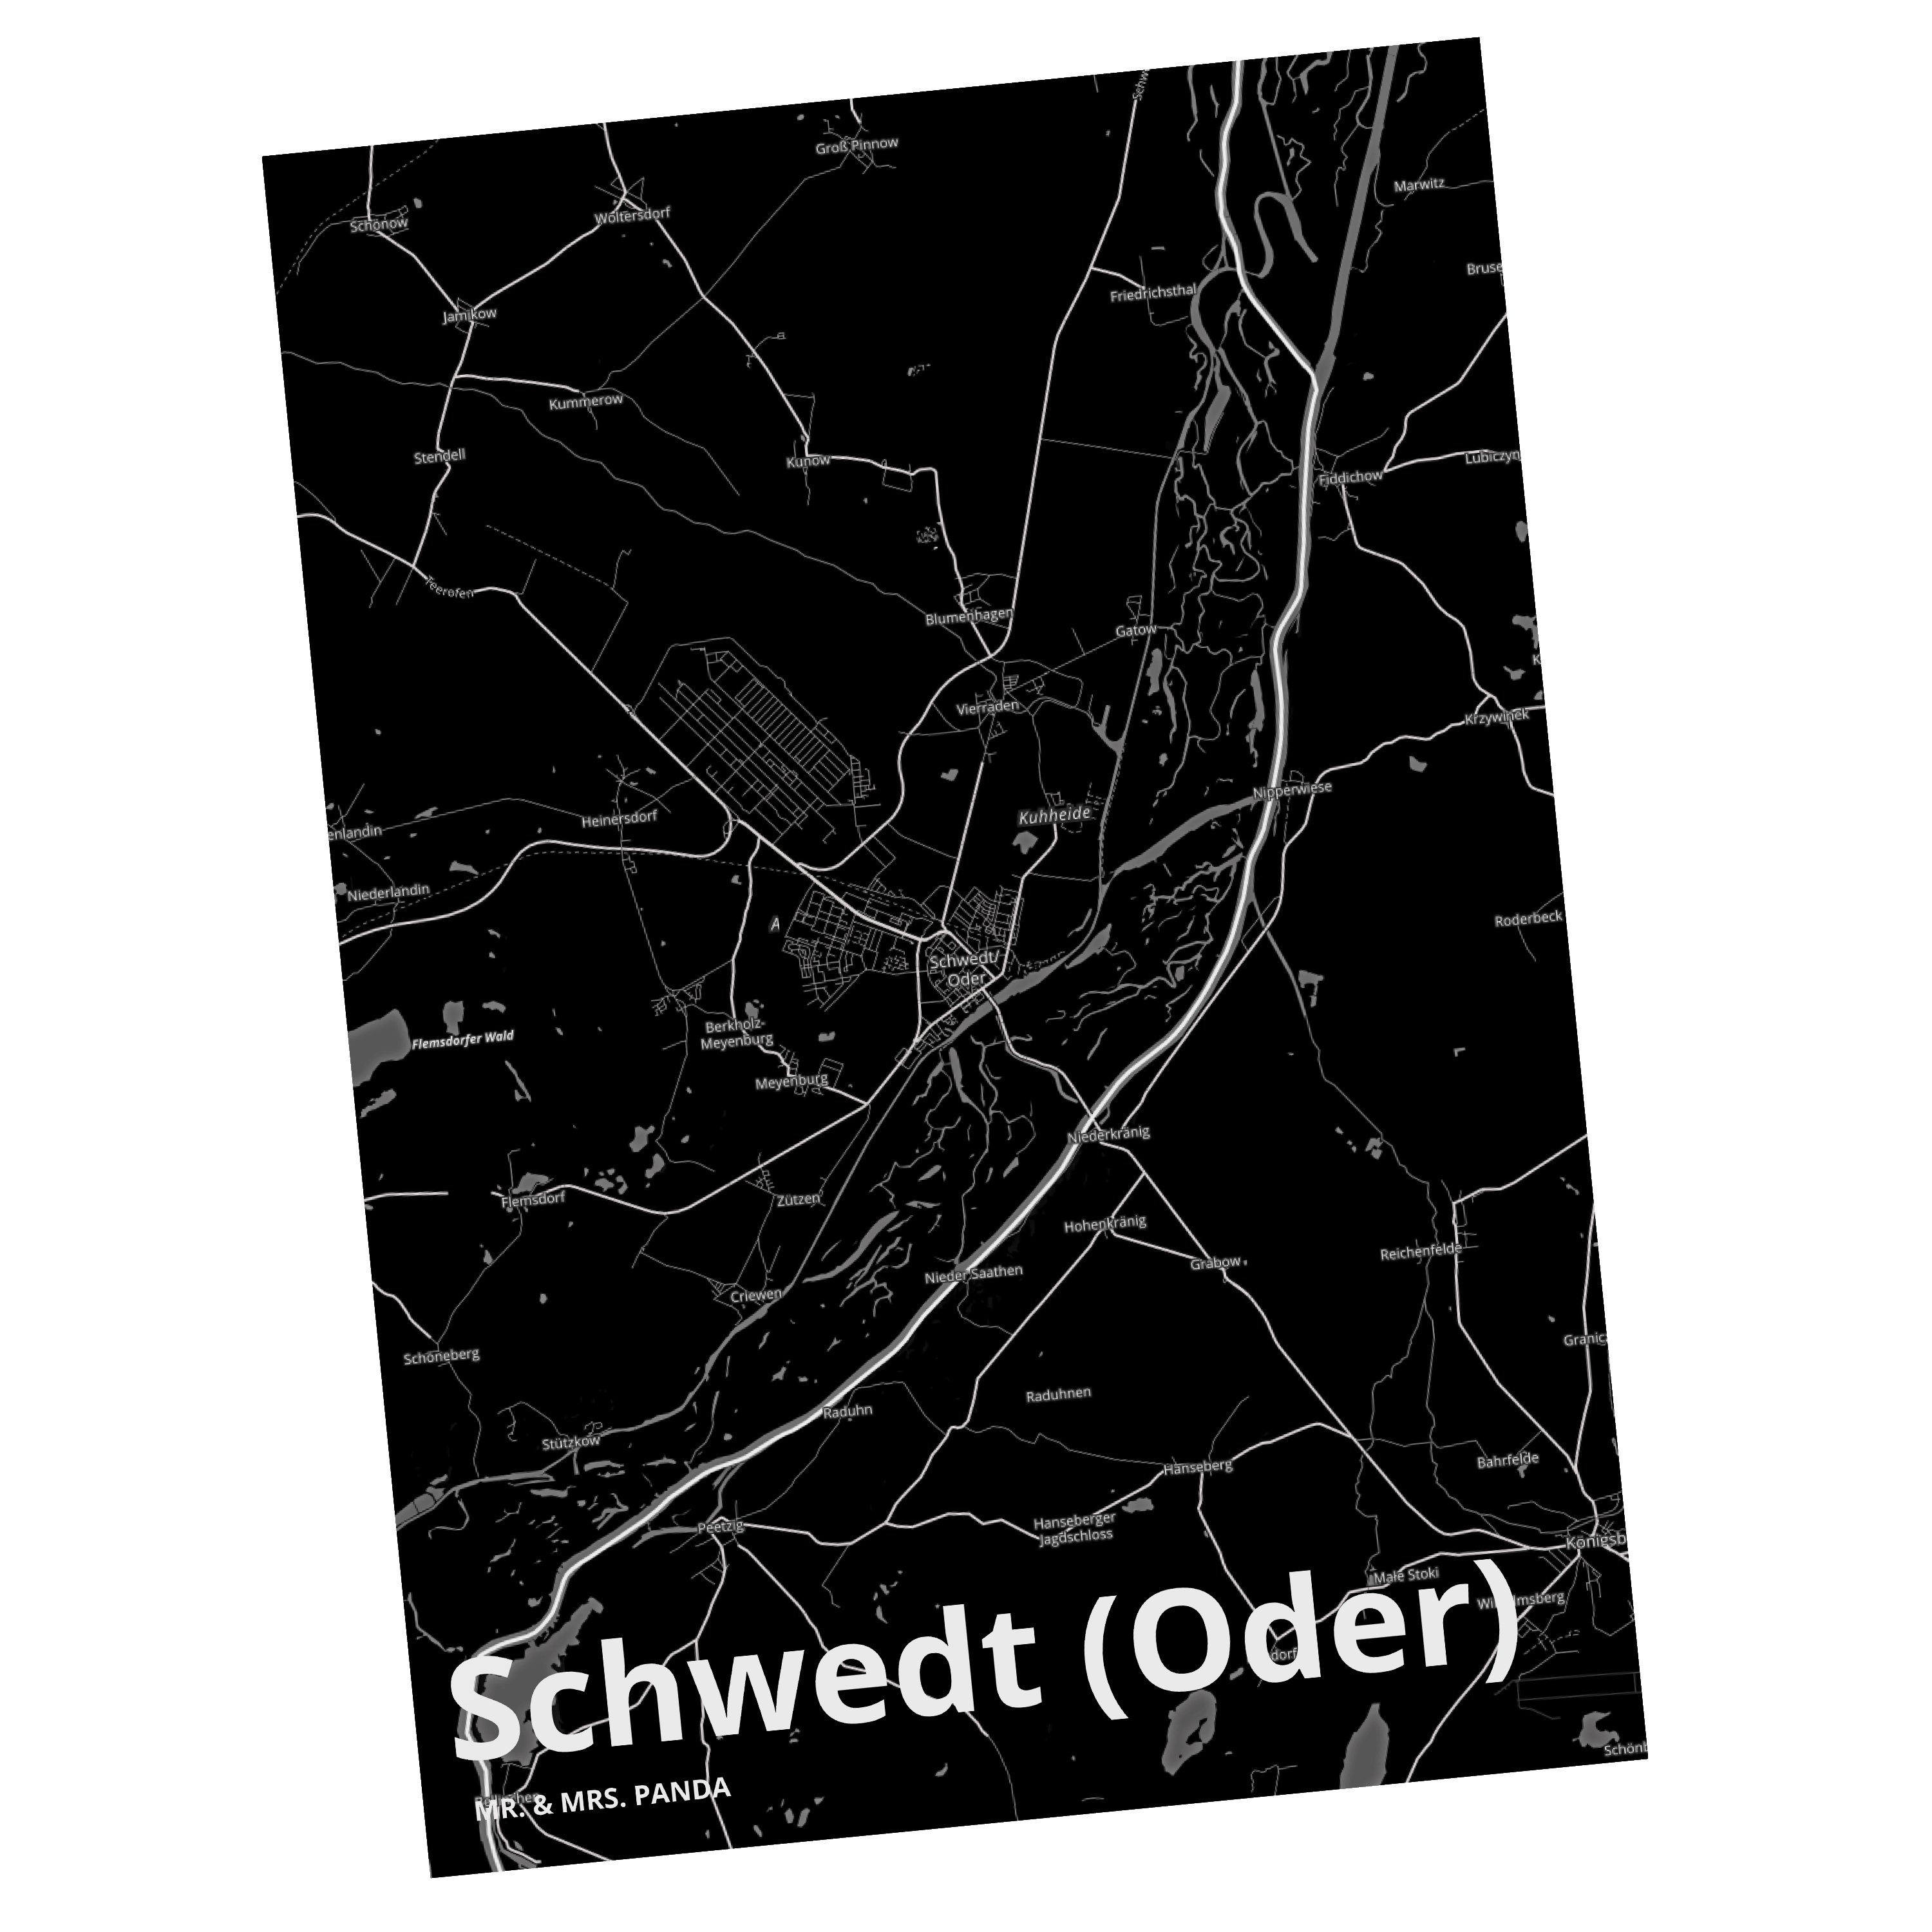 Mr. & Mrs. Panda Postkarte Map Karte Landkarte Schwedt Stadt Geschenk, (Oder) Stadtplan Dorf 